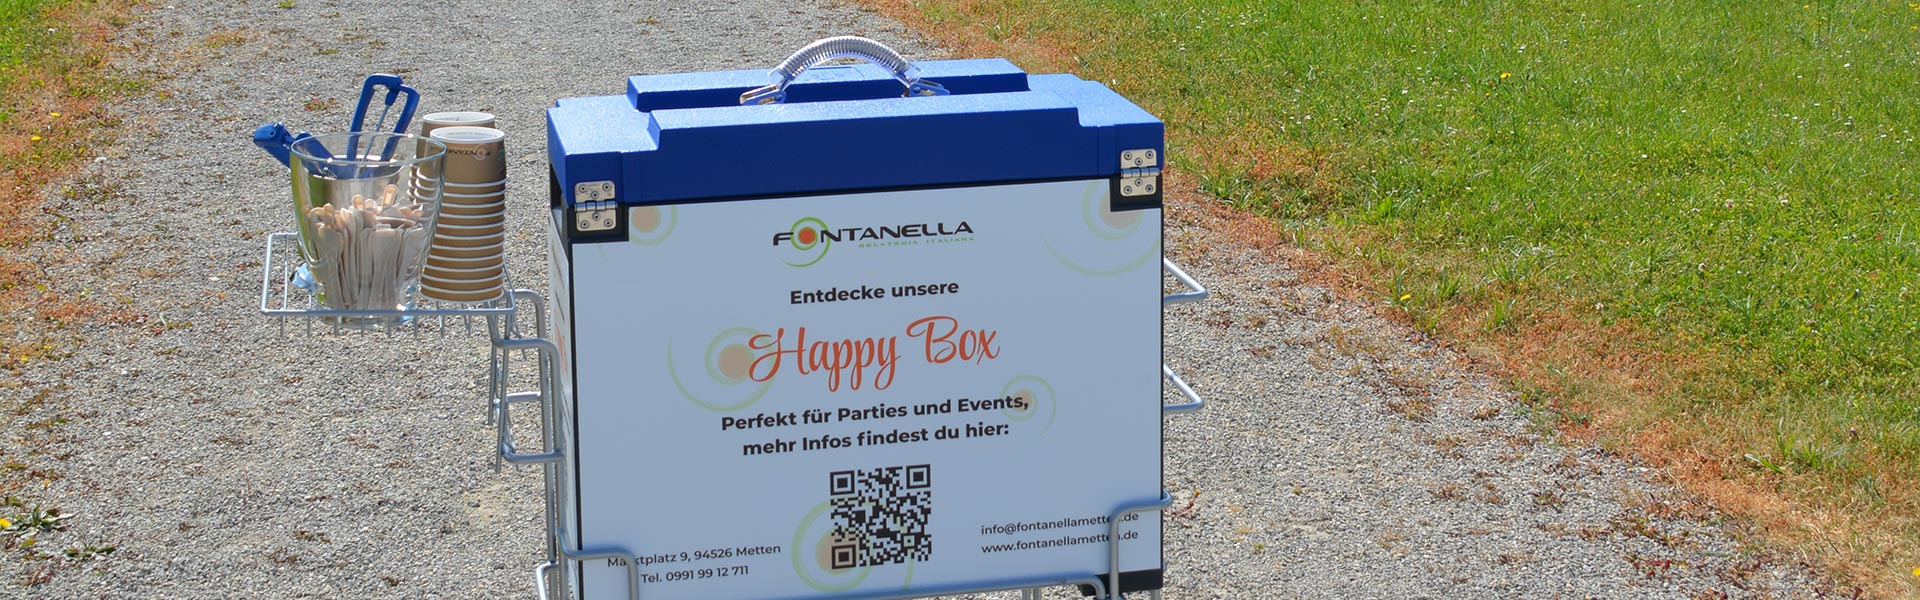 Happy Box: Eiscatering für Parties und Events